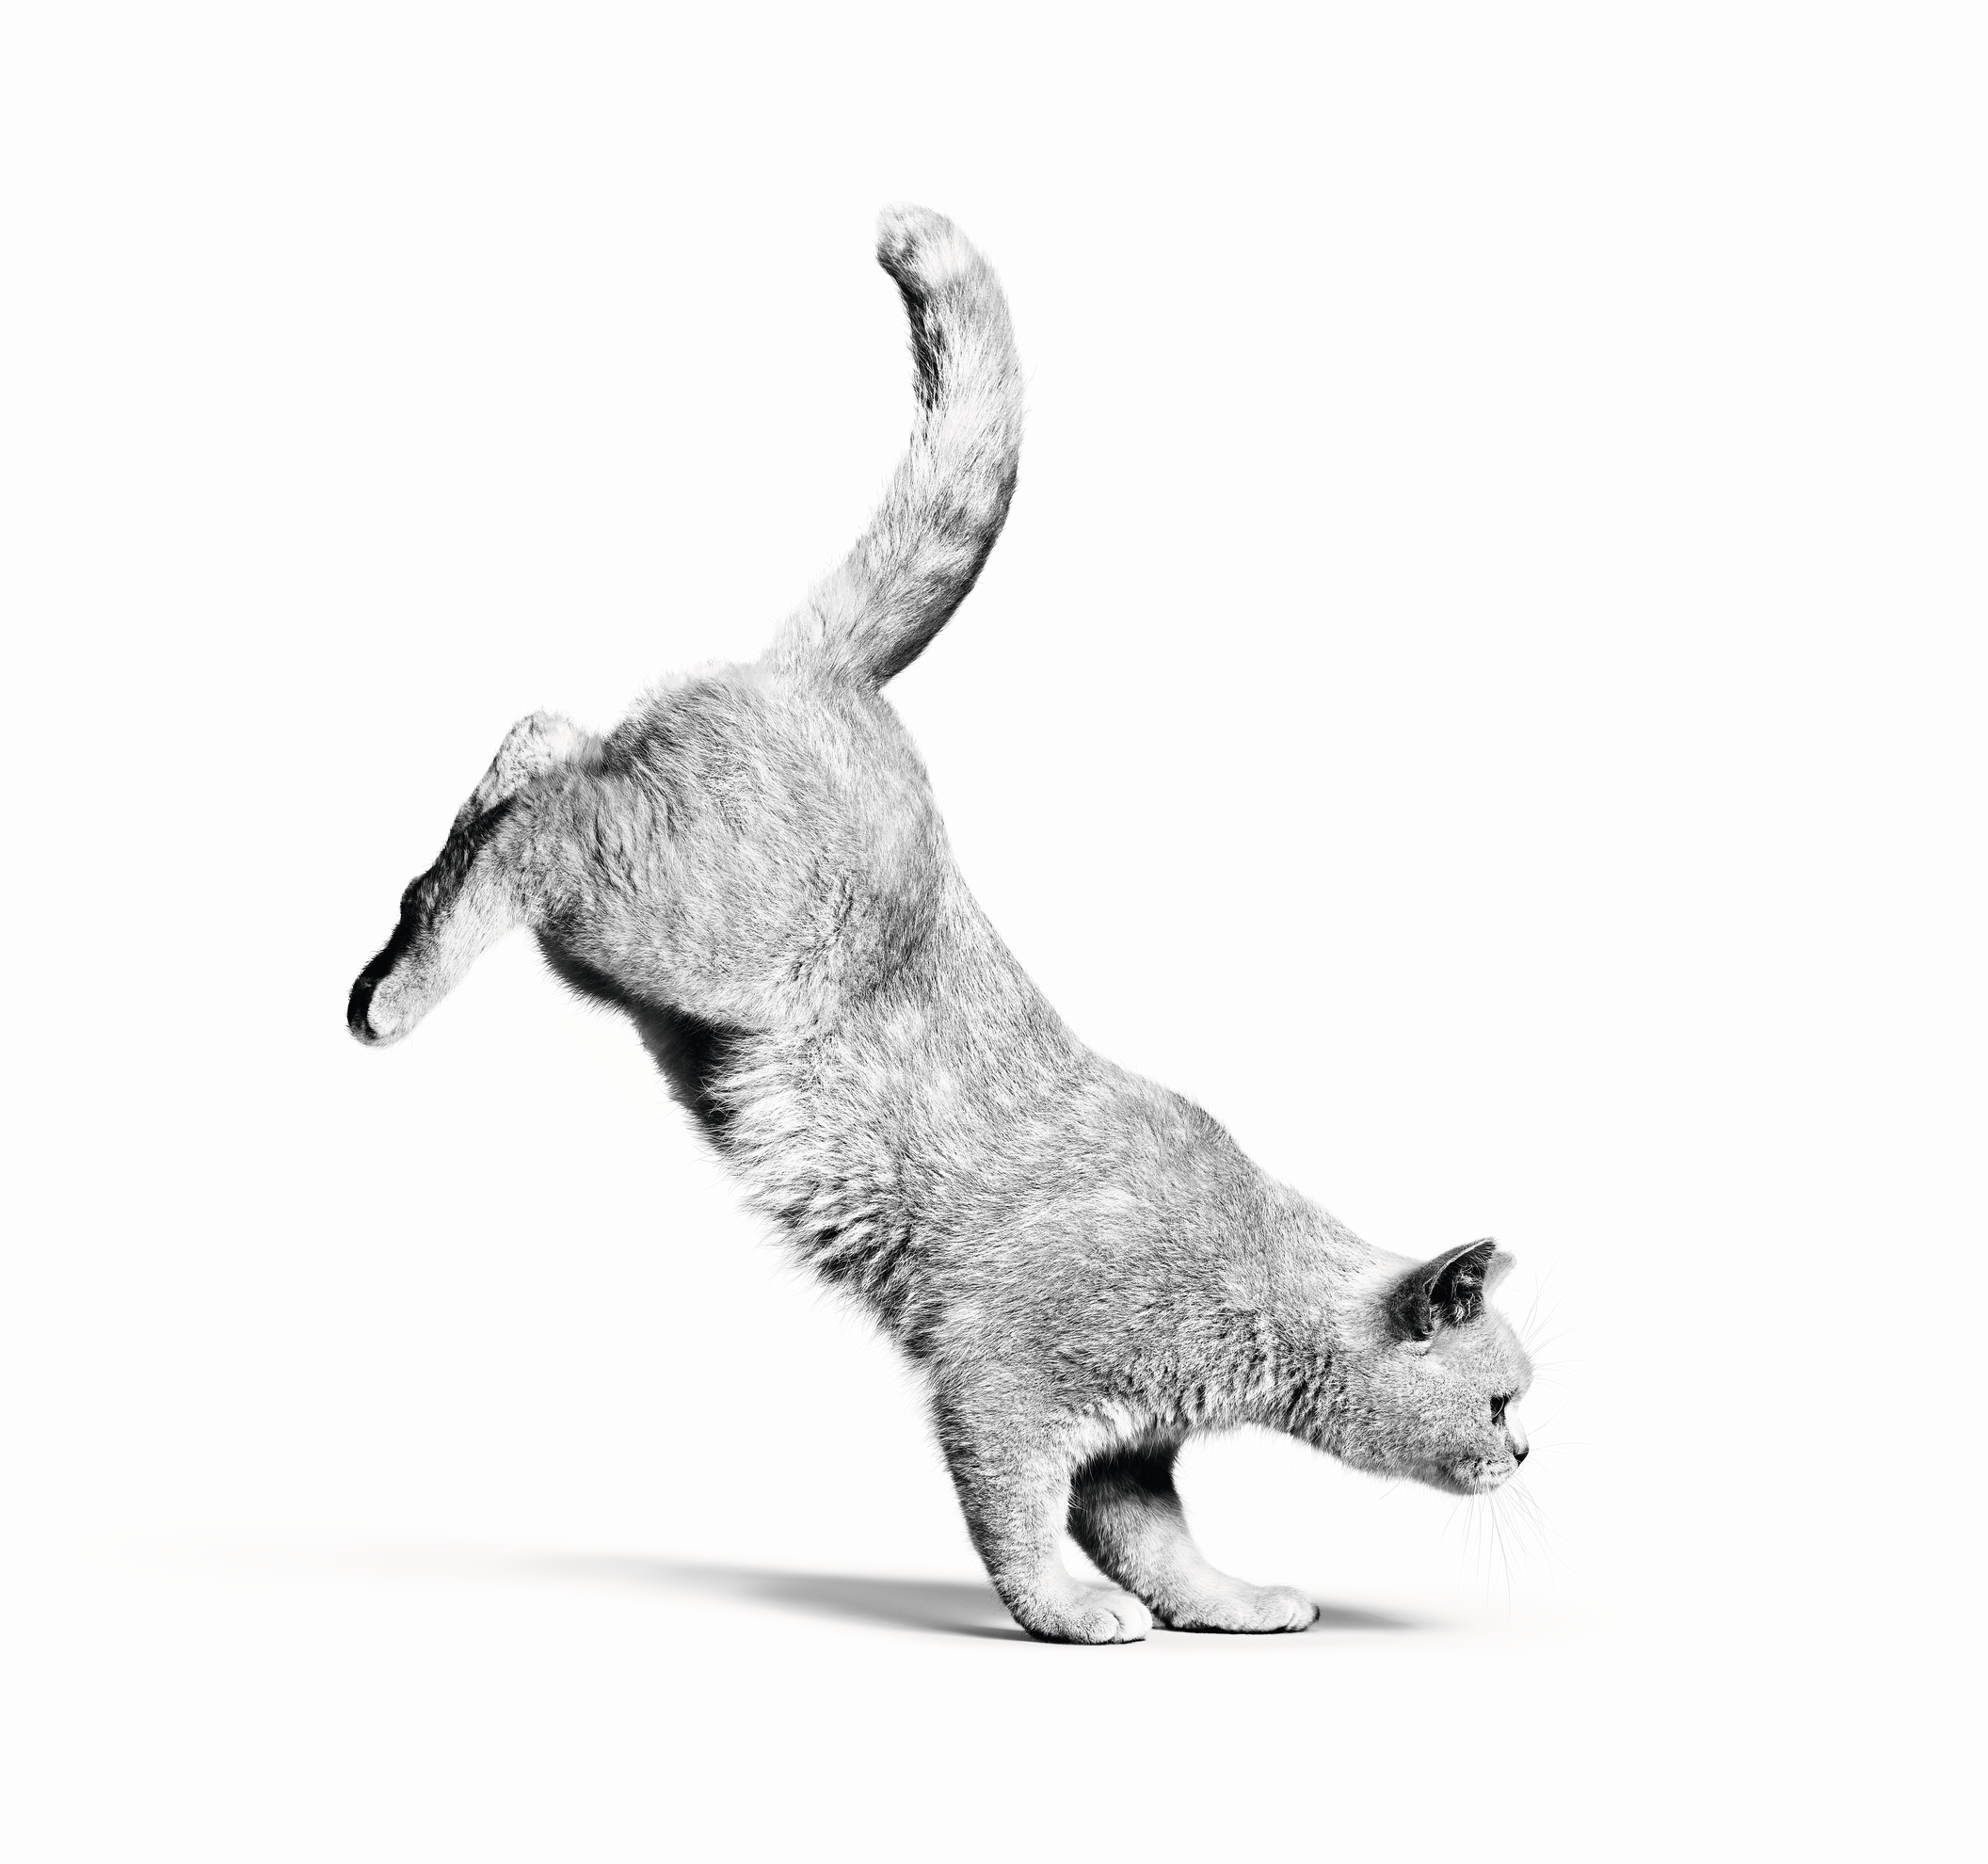 British Shorthair adulto in bianco e nero che salta su sfondo bianco